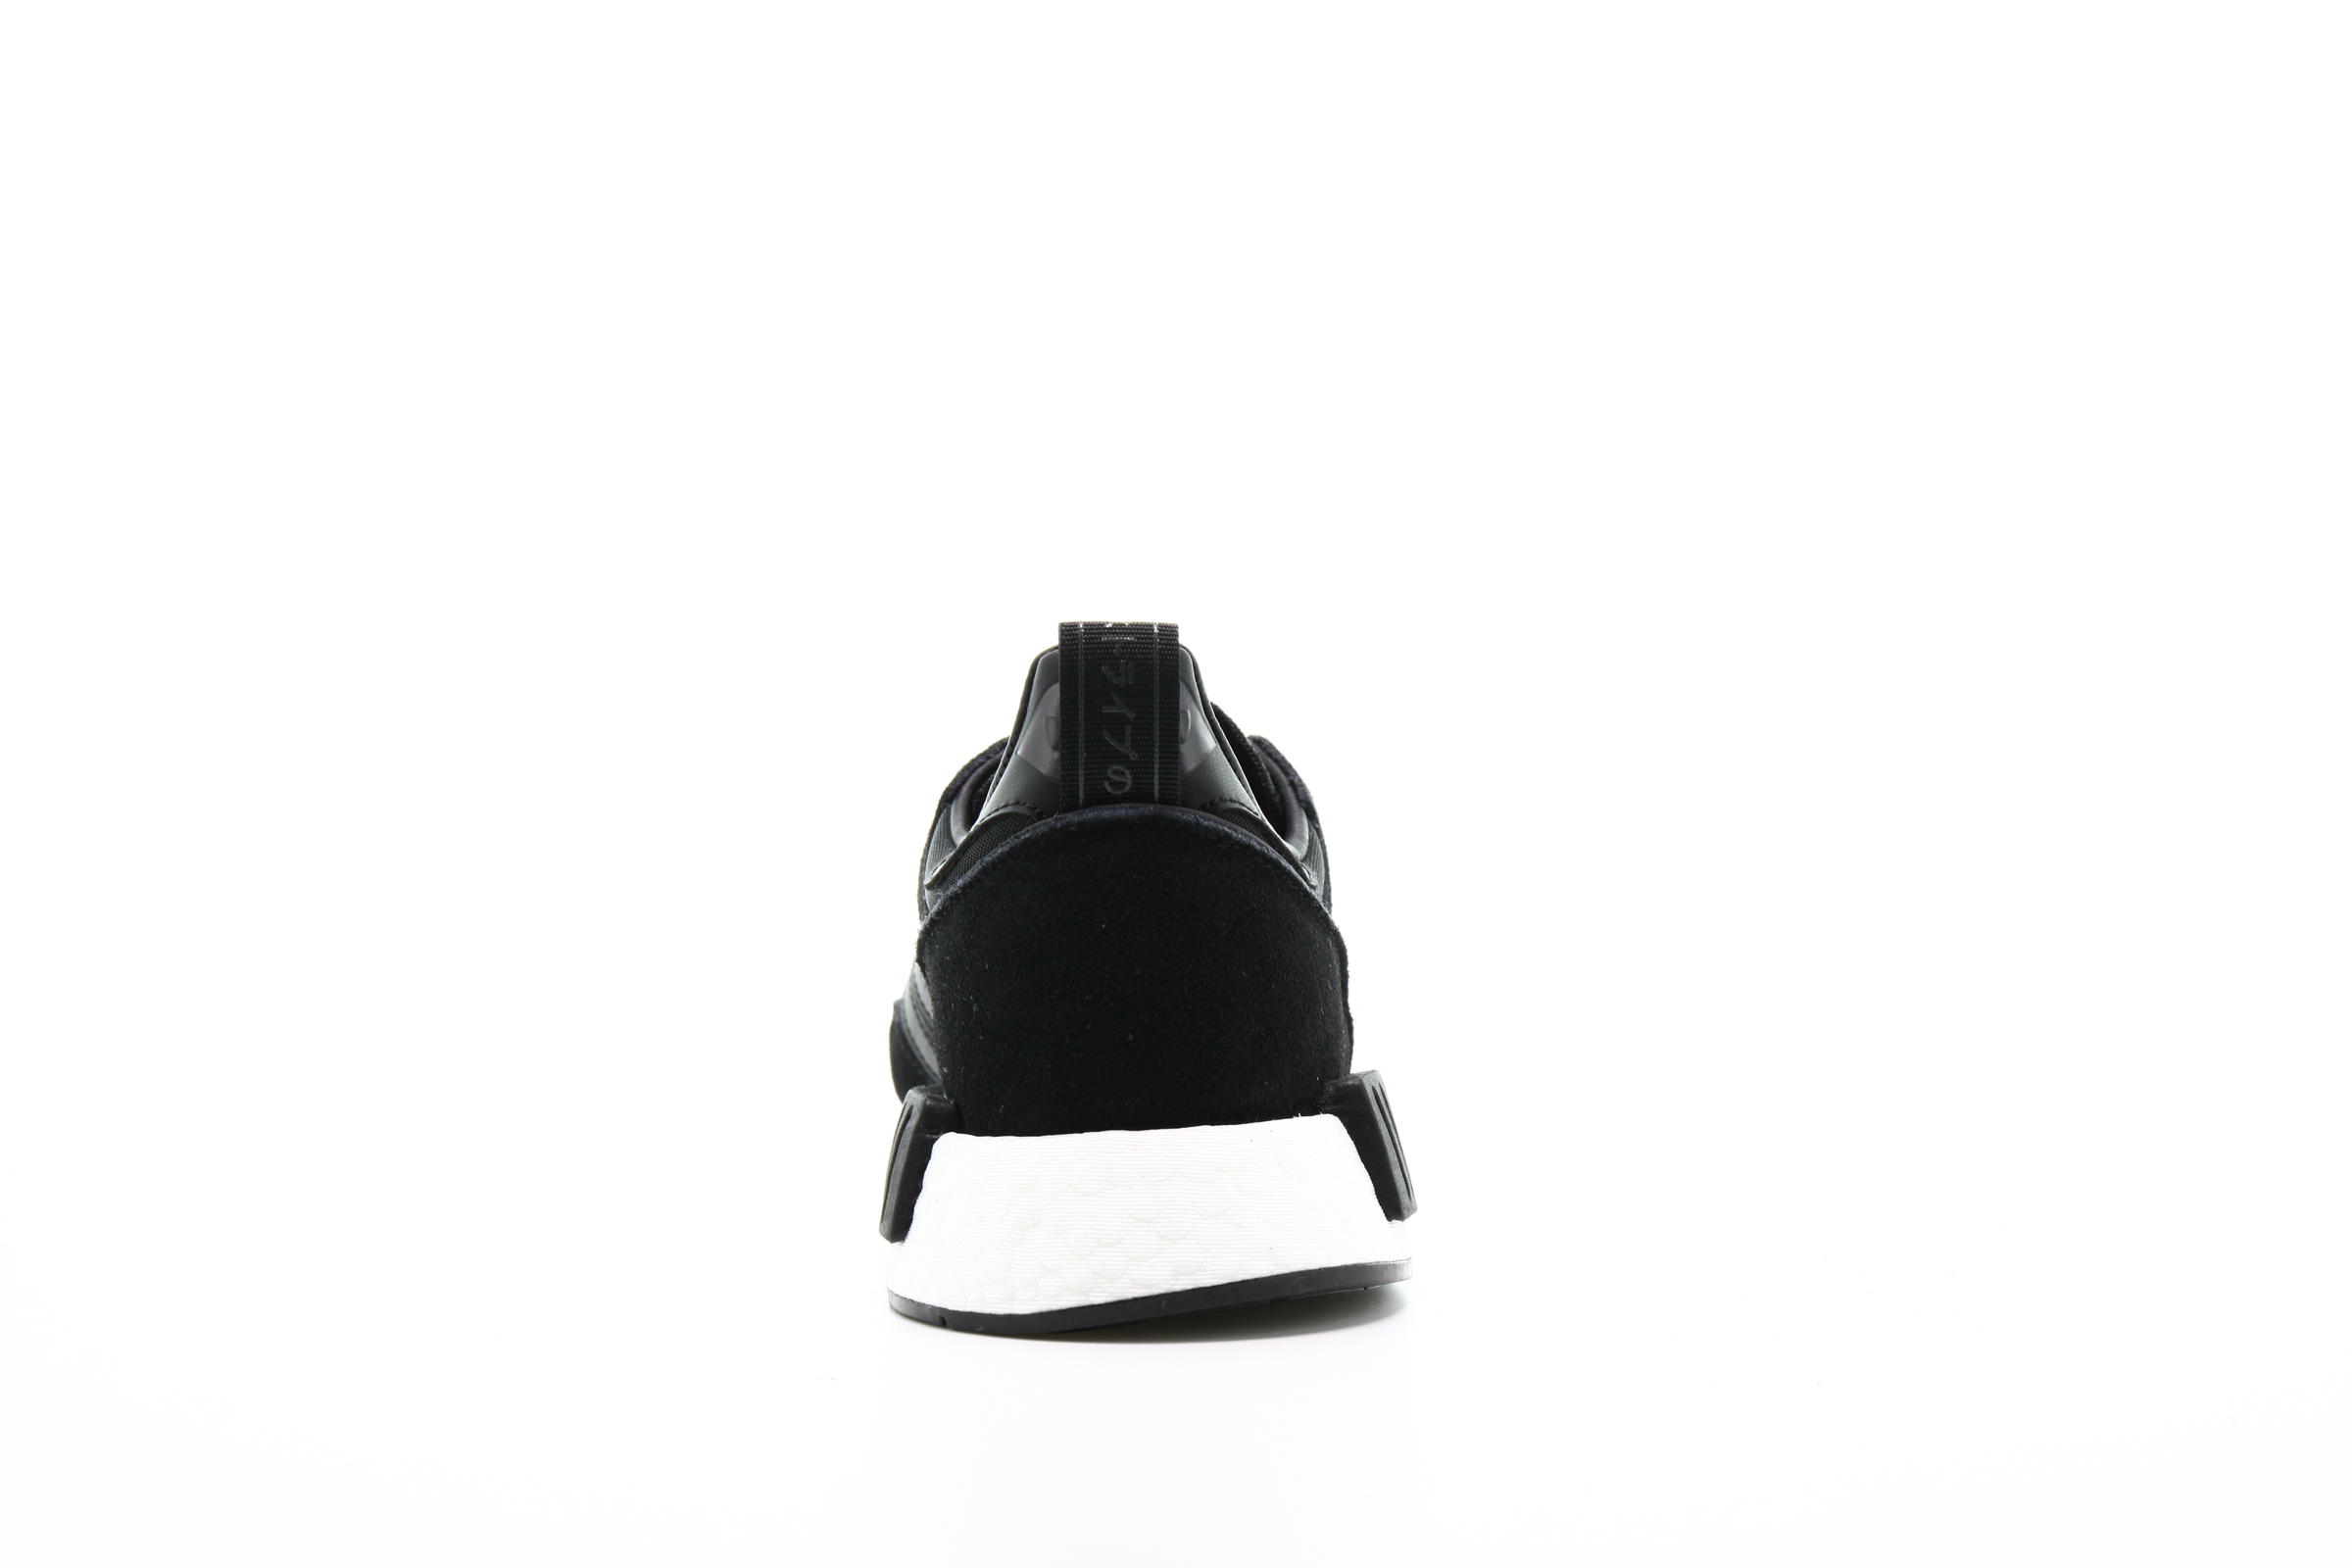 adidas Originals BOSTONSUPER x  R1 Never Made Pack "Utility Black"